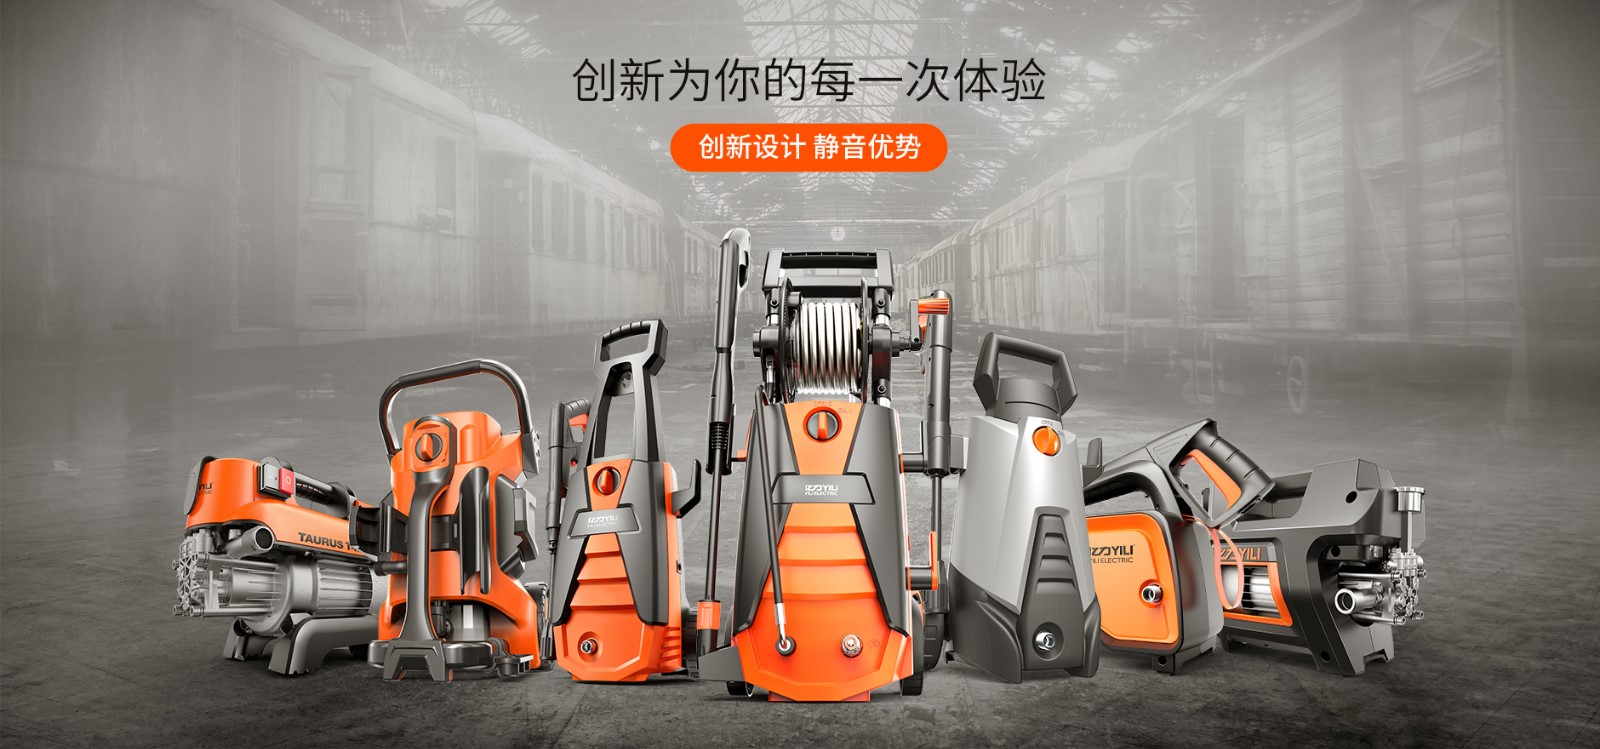 Zhejiang Yili Cleaning Appliances Co., Ltd.